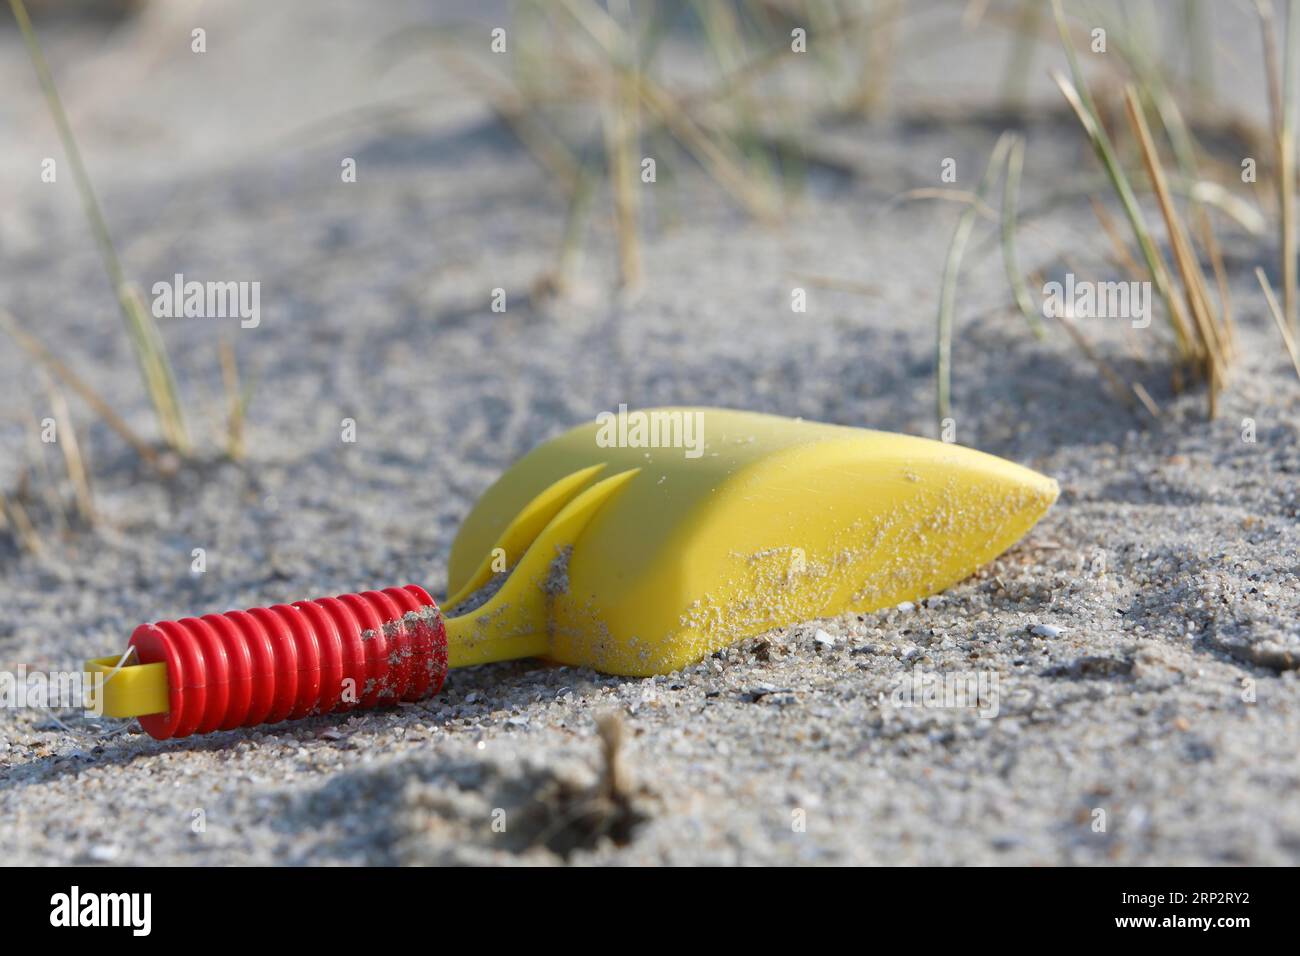 Rifiuti marini lavati sulla spiaggia, impatto umano sull'ecosistema marino, Minsener Oog, bassa Sassonia, Germania Foto Stock